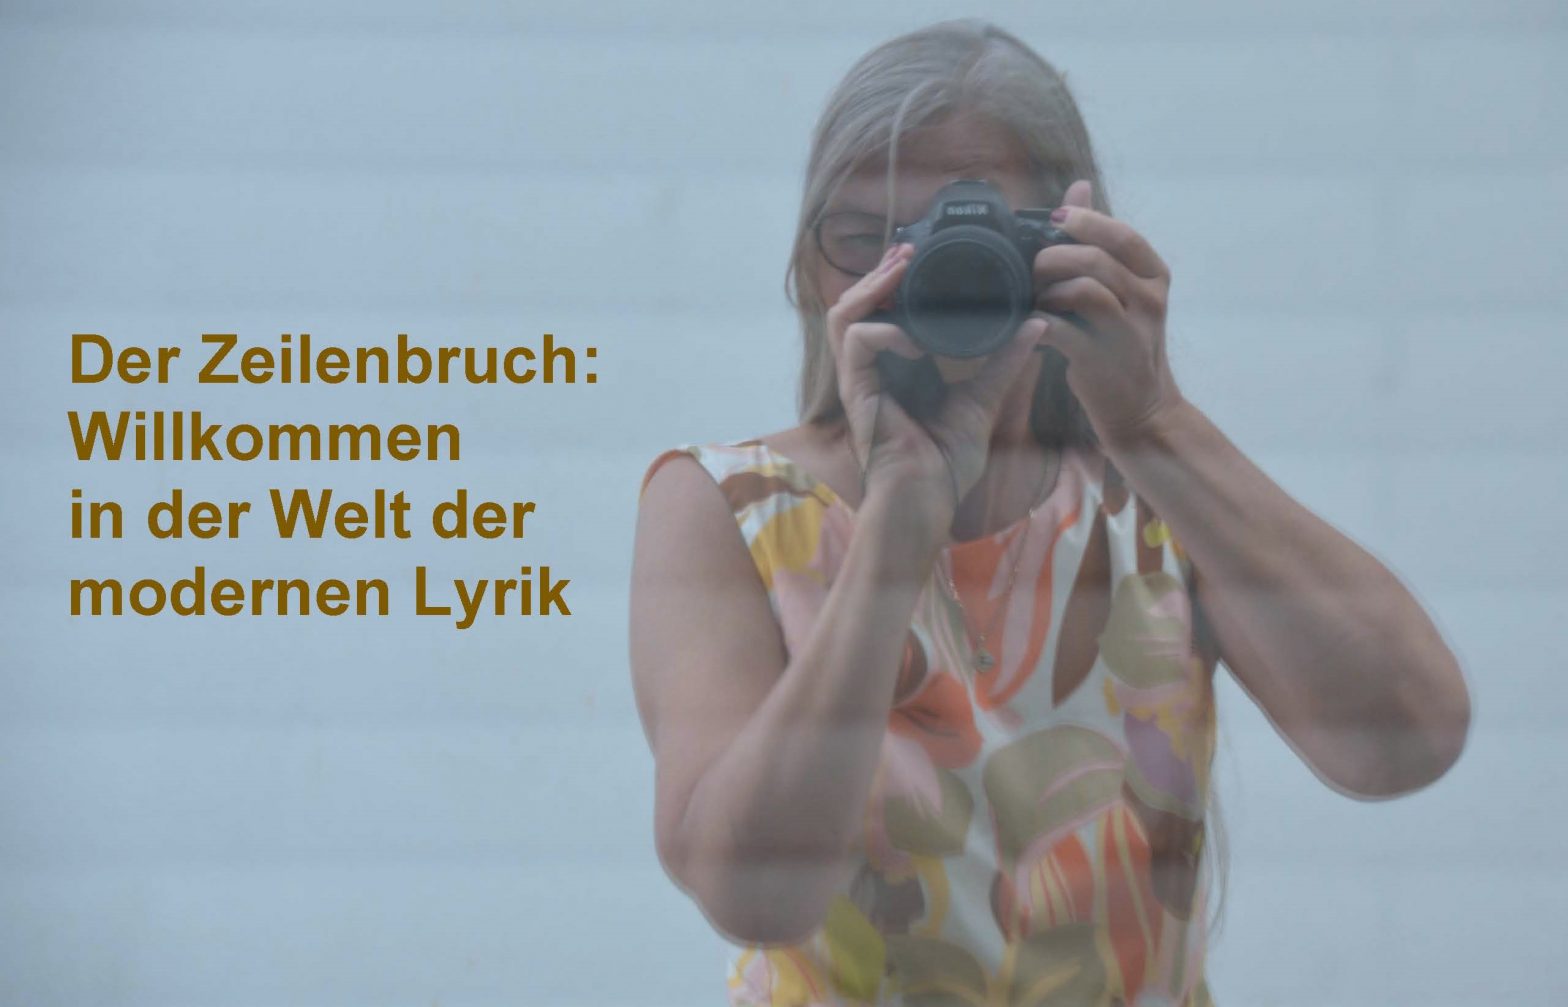 Eine Frau mit Kamera vor dem Gesicht, links daneben der Text: Der Zeilenbruch: Willkommen in der Welt der modernen Lyrik